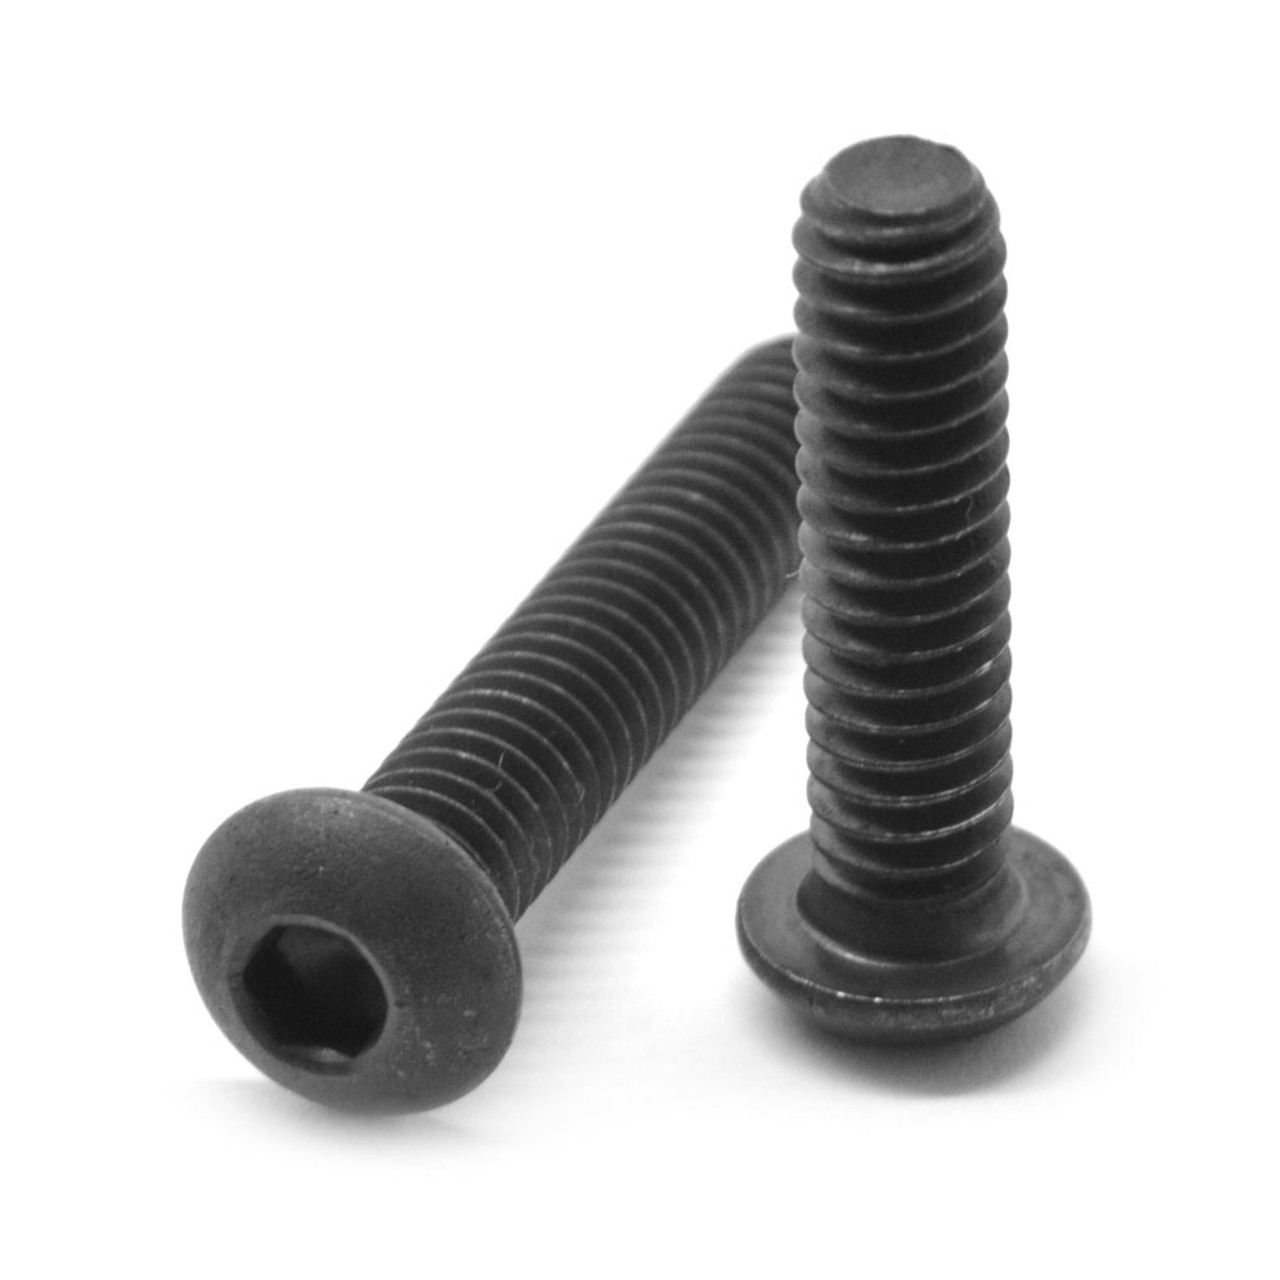 #8-32 x 5/8" (FT) Coarse Thread Socket Button Head Cap Screw Alloy Steel Black Oxide